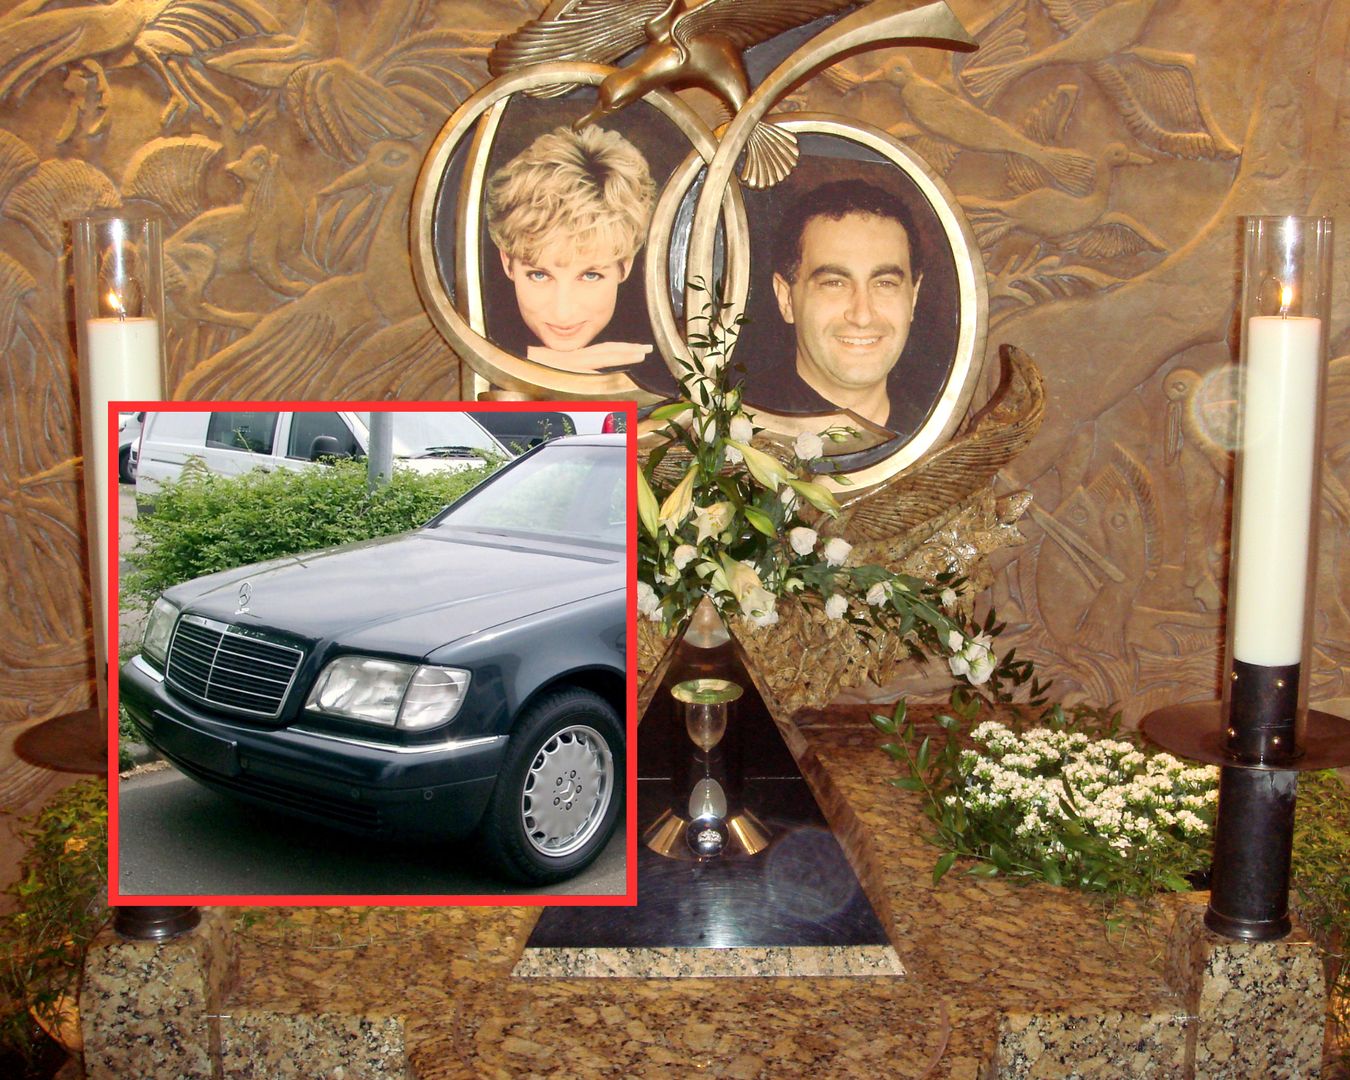 26 lat temu zginęła księżna Diana. Tajemnicze zaginięcie auta